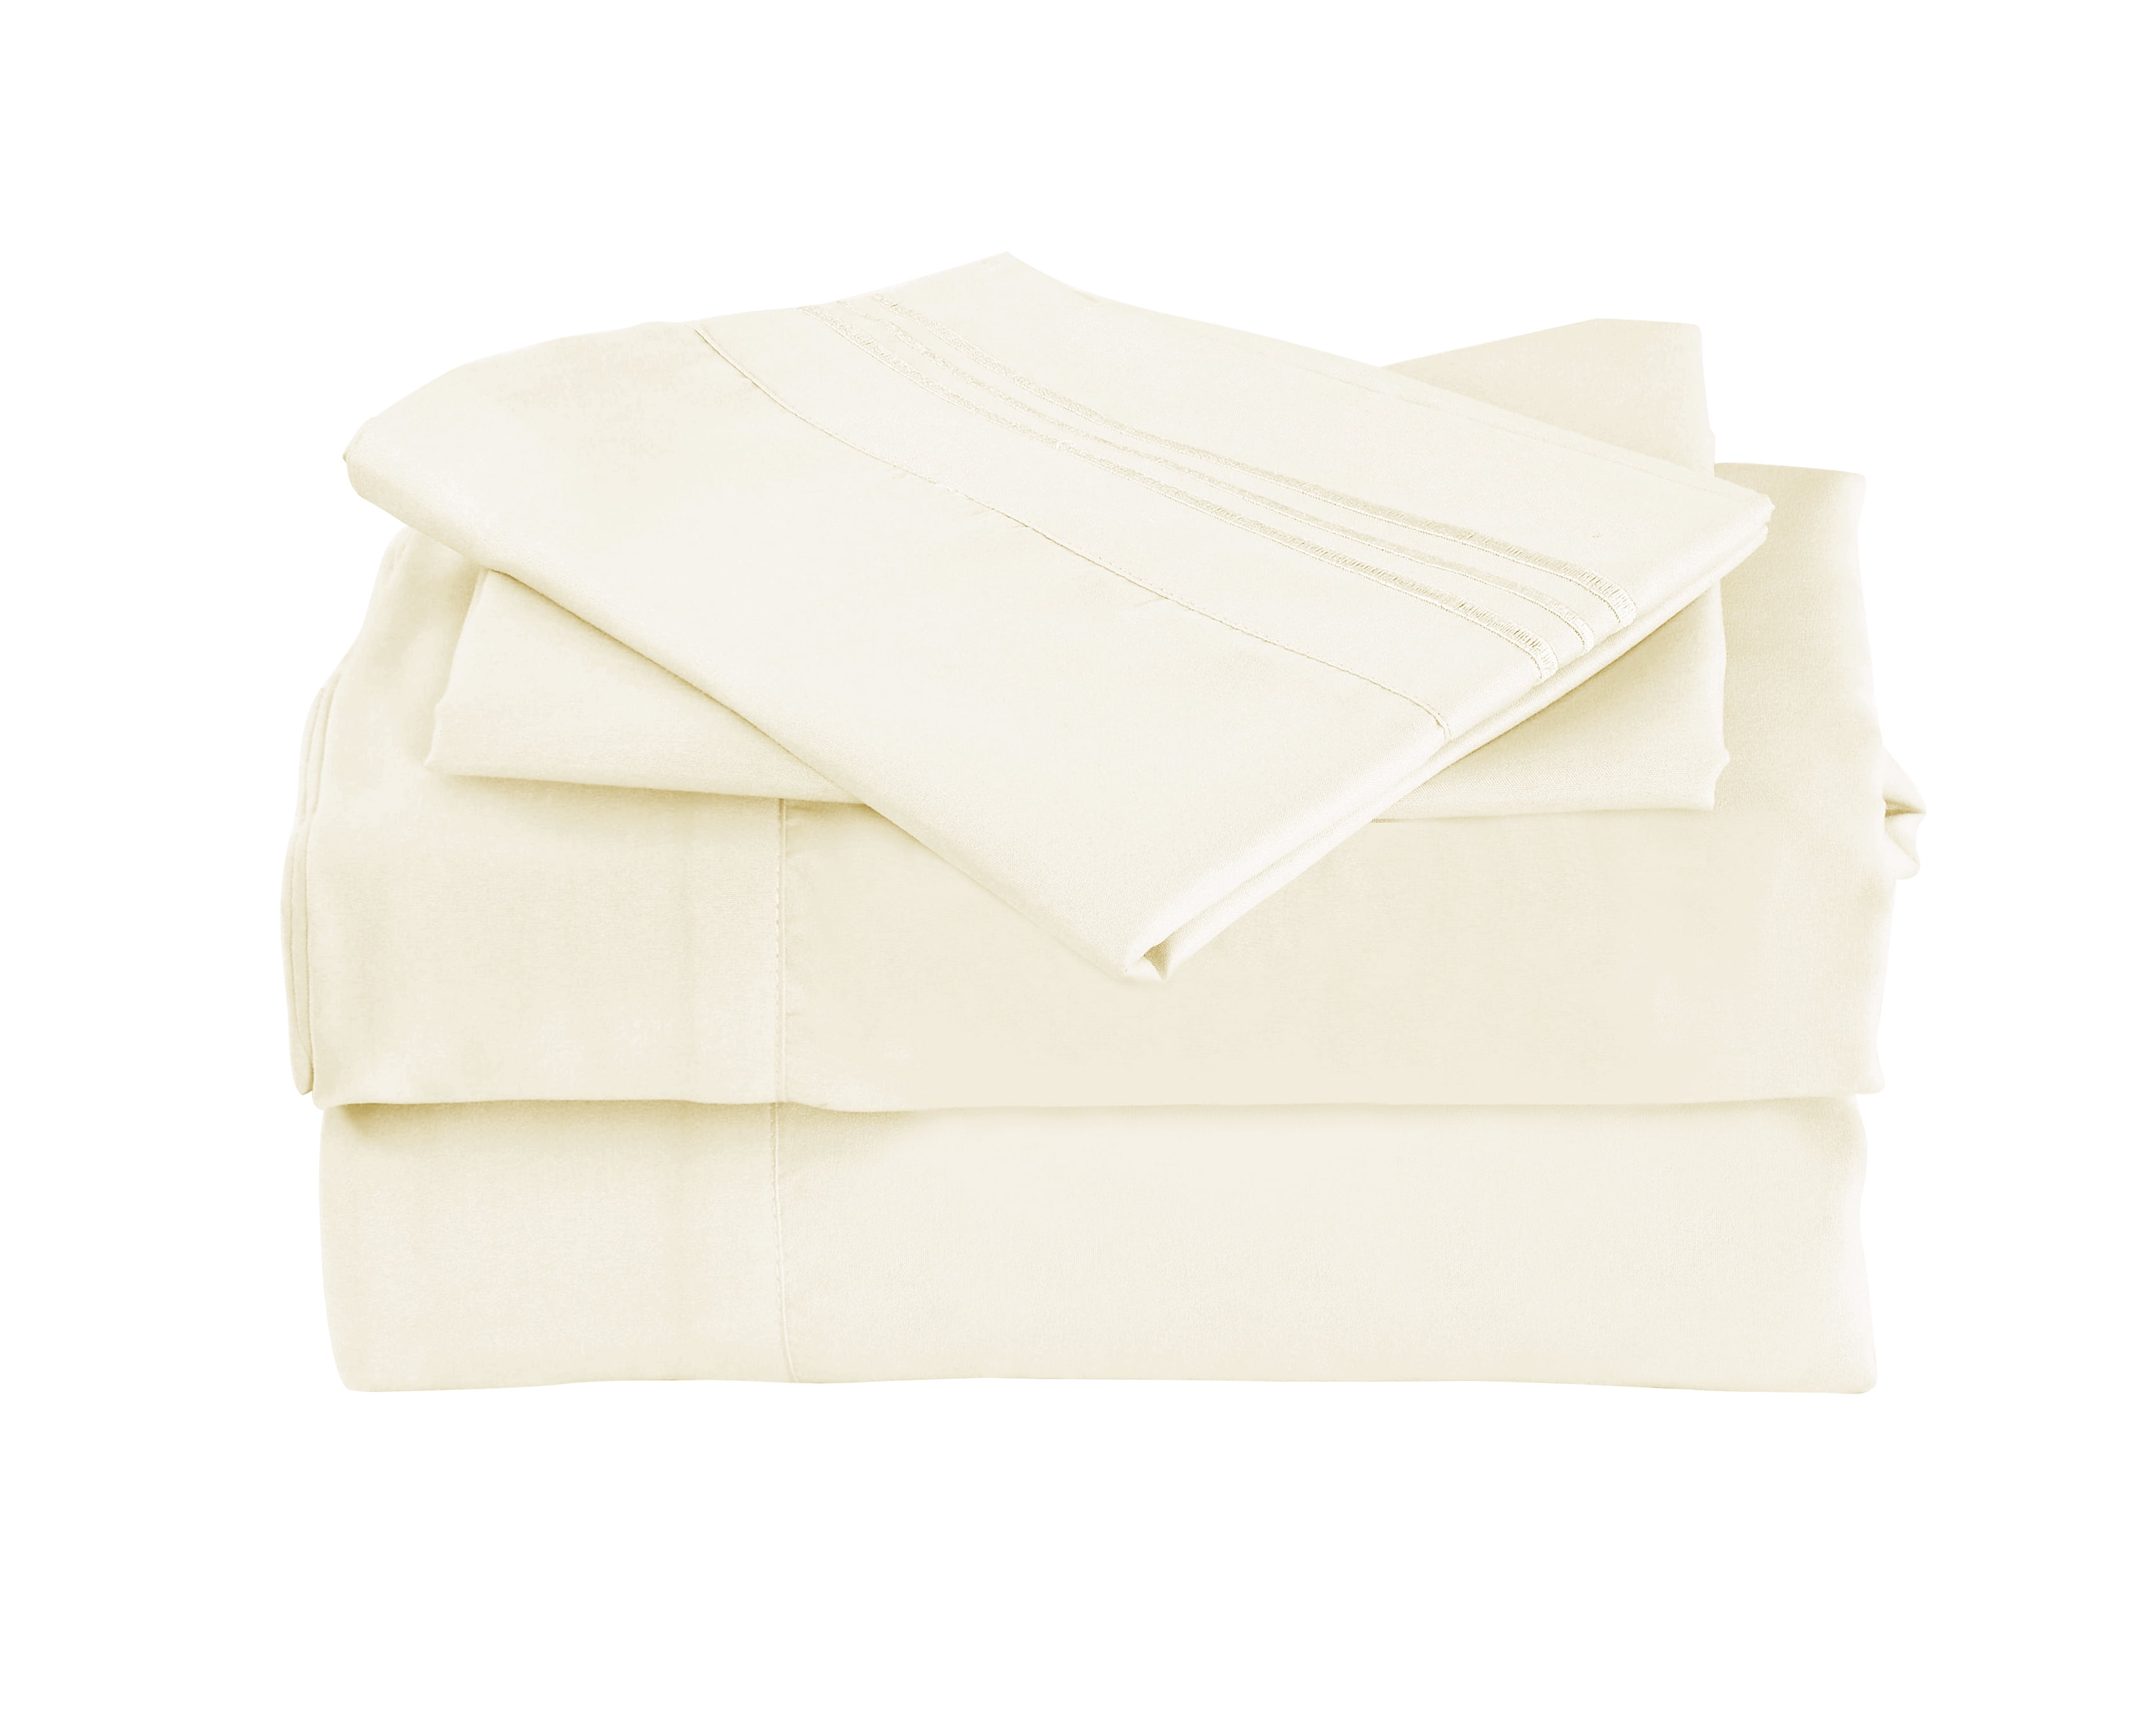 2 Pillow Cases Pure Cotton 500TC per 10cm2 Plain Ivory 50x75cm Oversize 